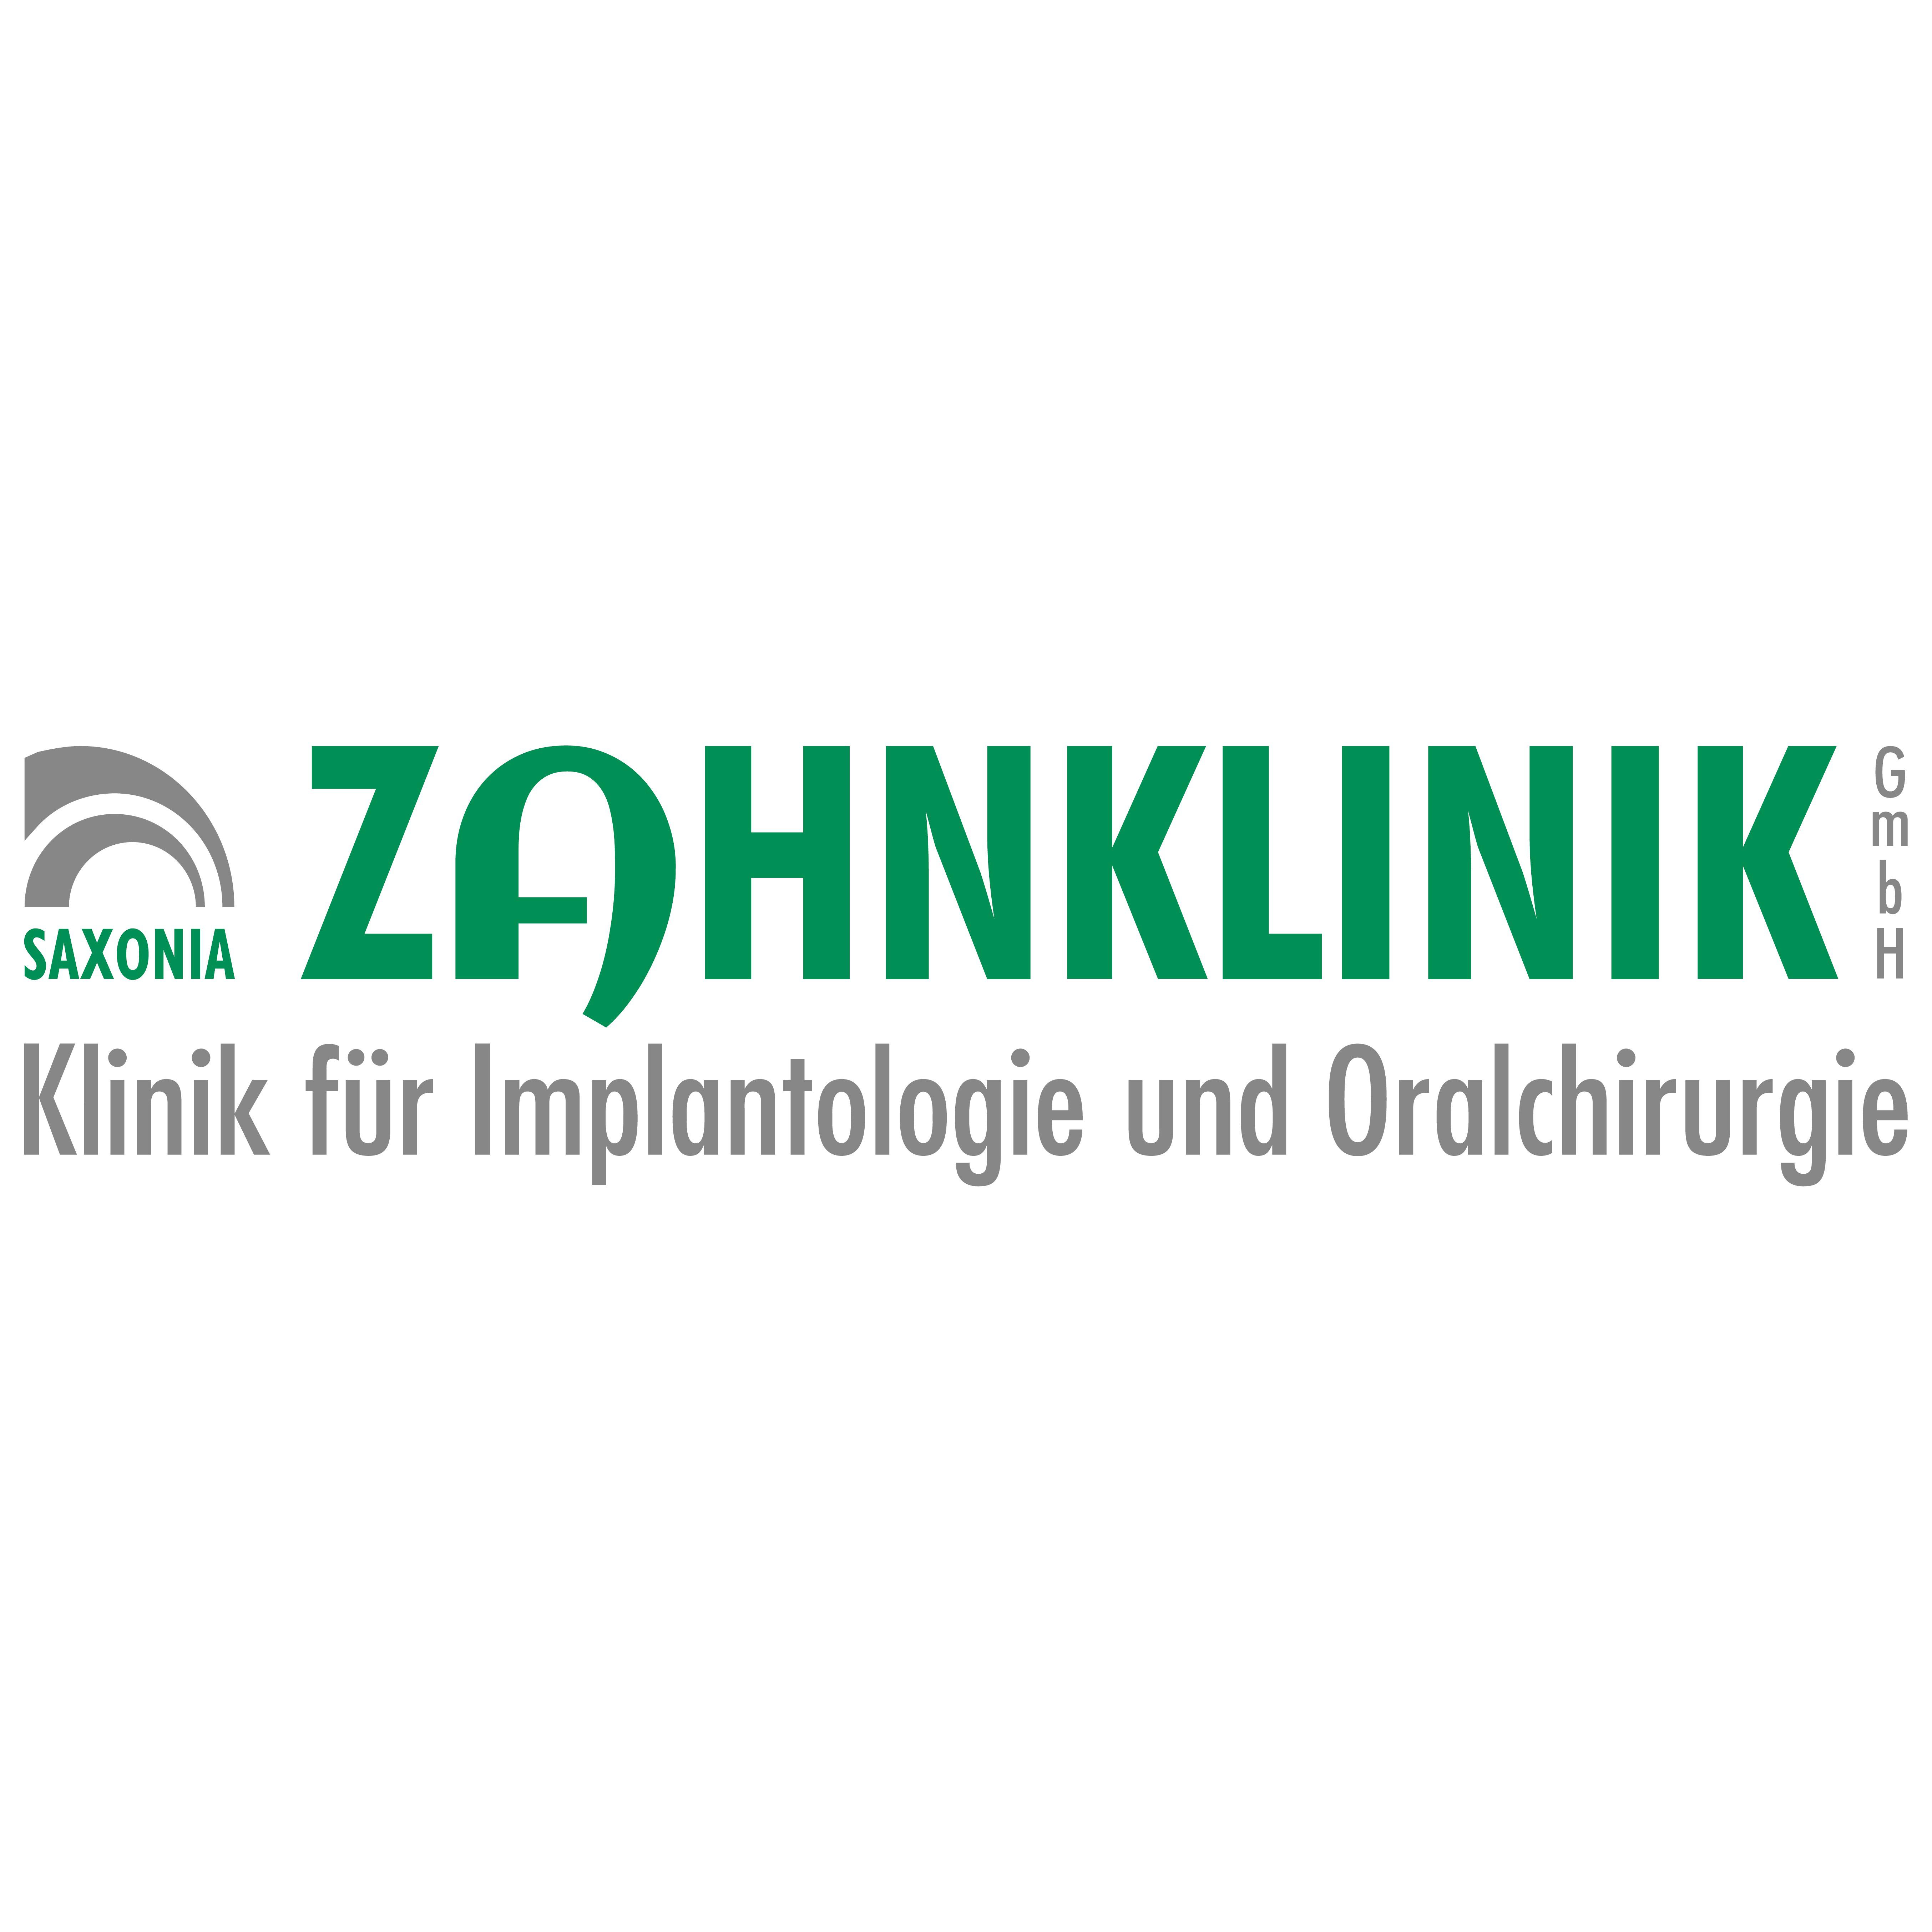 Saxonia-Zahnklinik GmbH Klinik für Implantologie und Oralchirurgie Leipzig